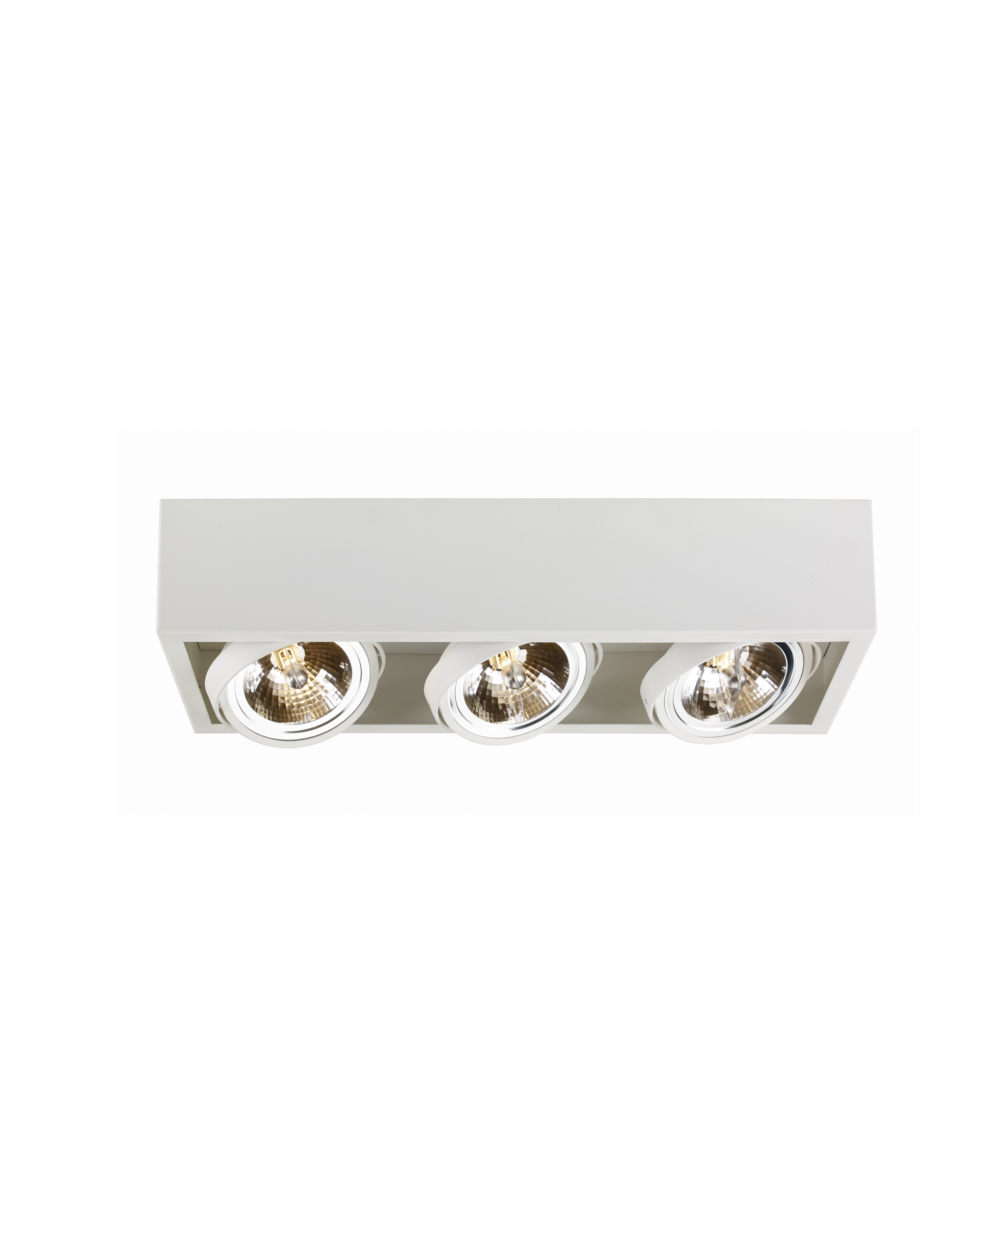 Oprawa natynkowa CUBE 3 QR111 w kolorze białym - Kaspa lampa sufitowa w kształcie prostopadłościanu